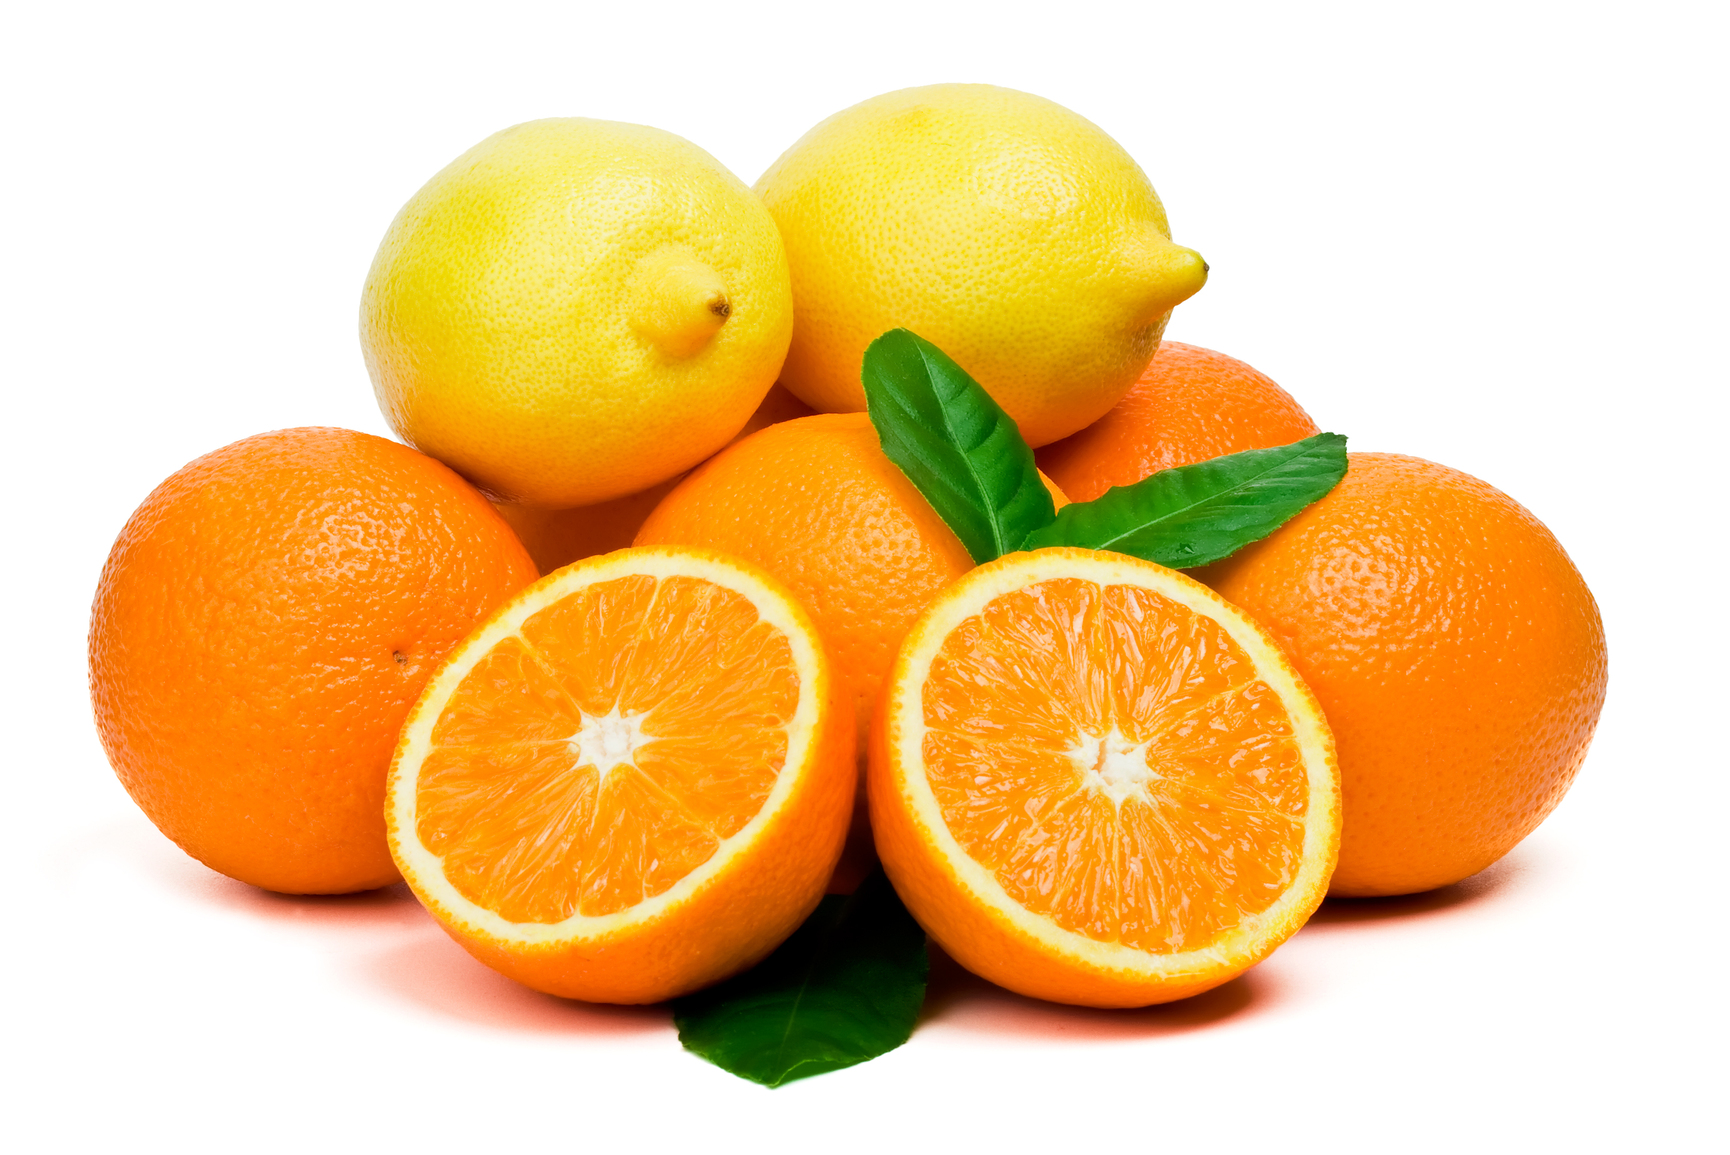 غزلان مكوار تقدم مقشر فيتامين c بالبرتقال والليمون ينعم و يخفف البقع السوداء